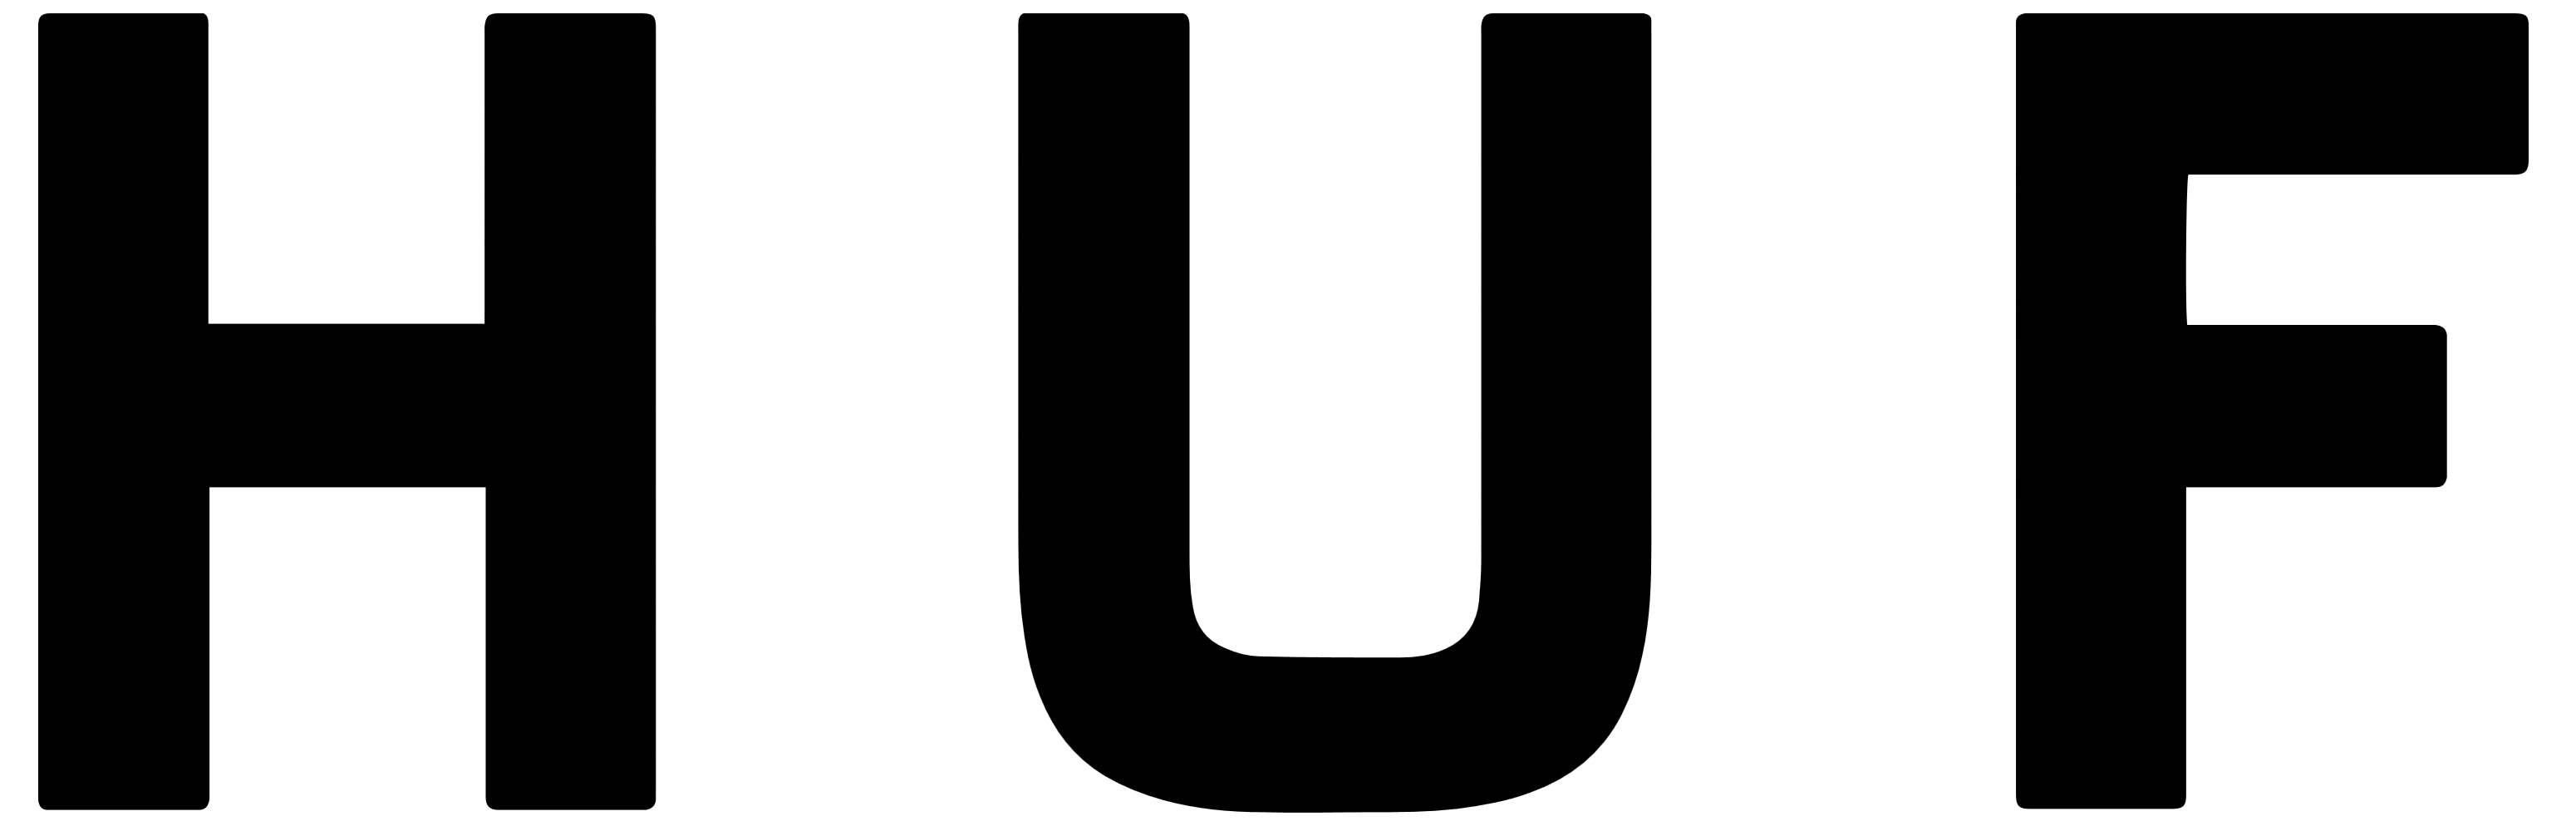 HUF logo, logotype